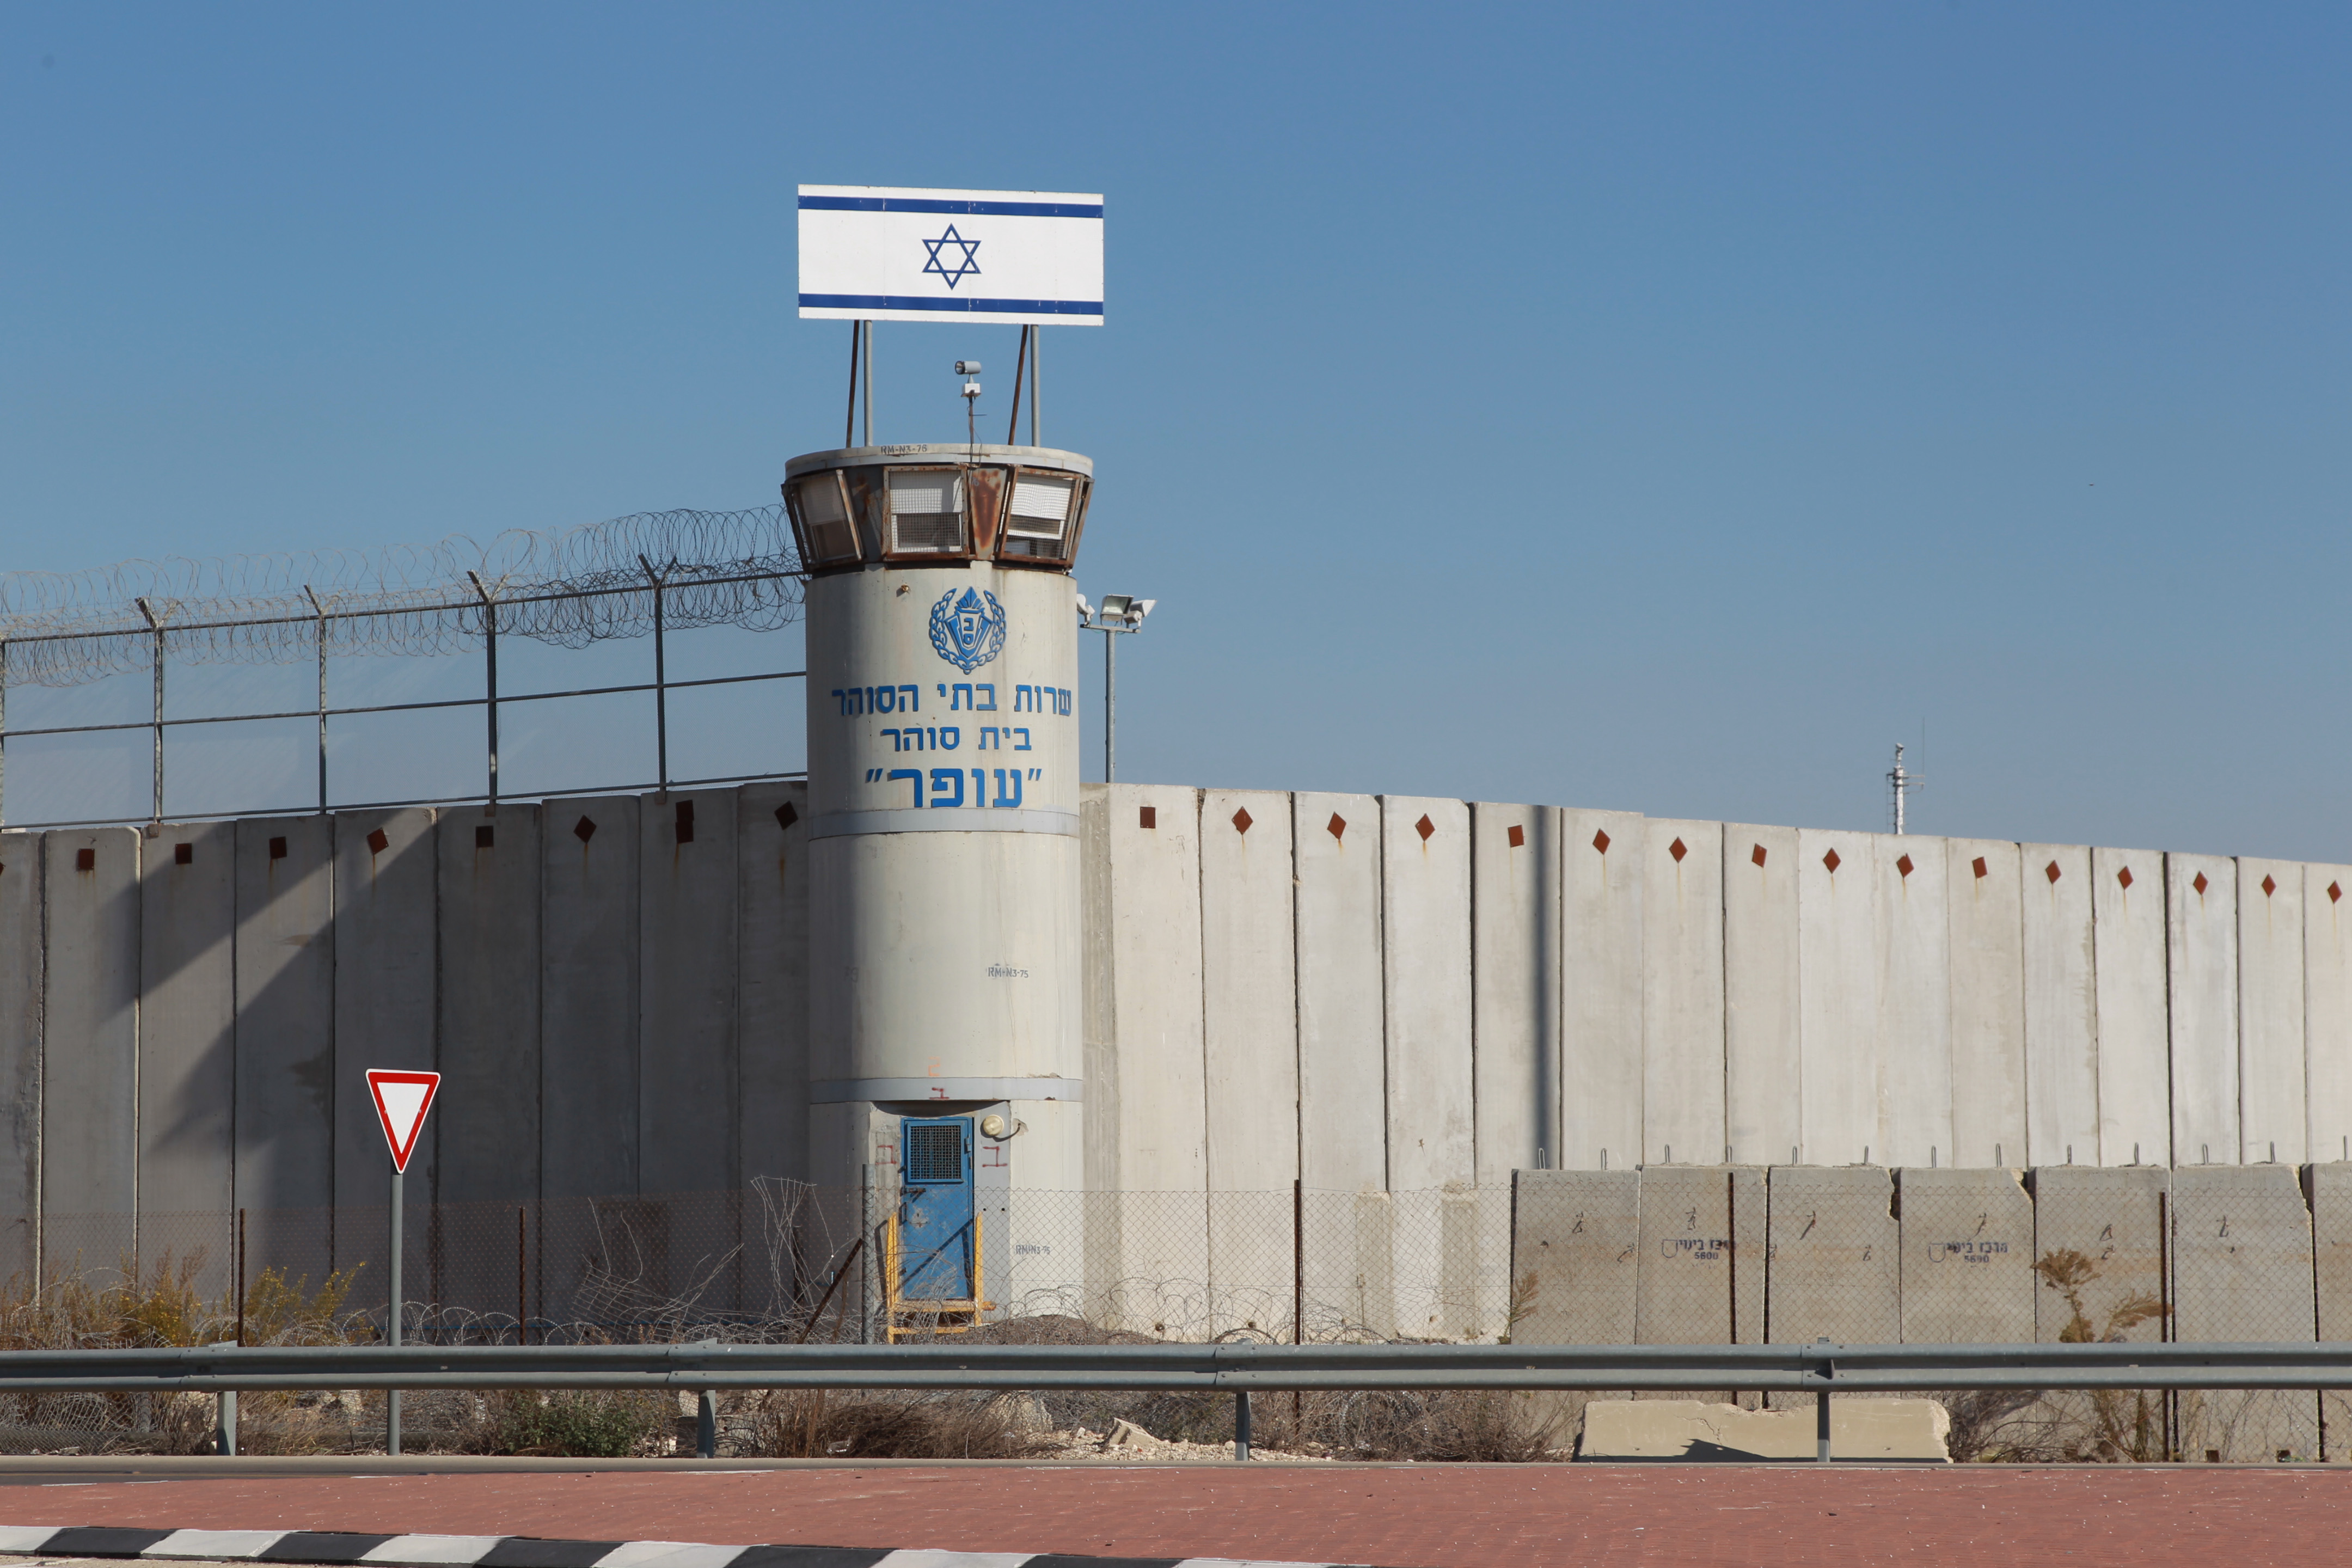 قانون إسرائيلي للتحقيق مع معتقلي الداخل بأقسام خاصة